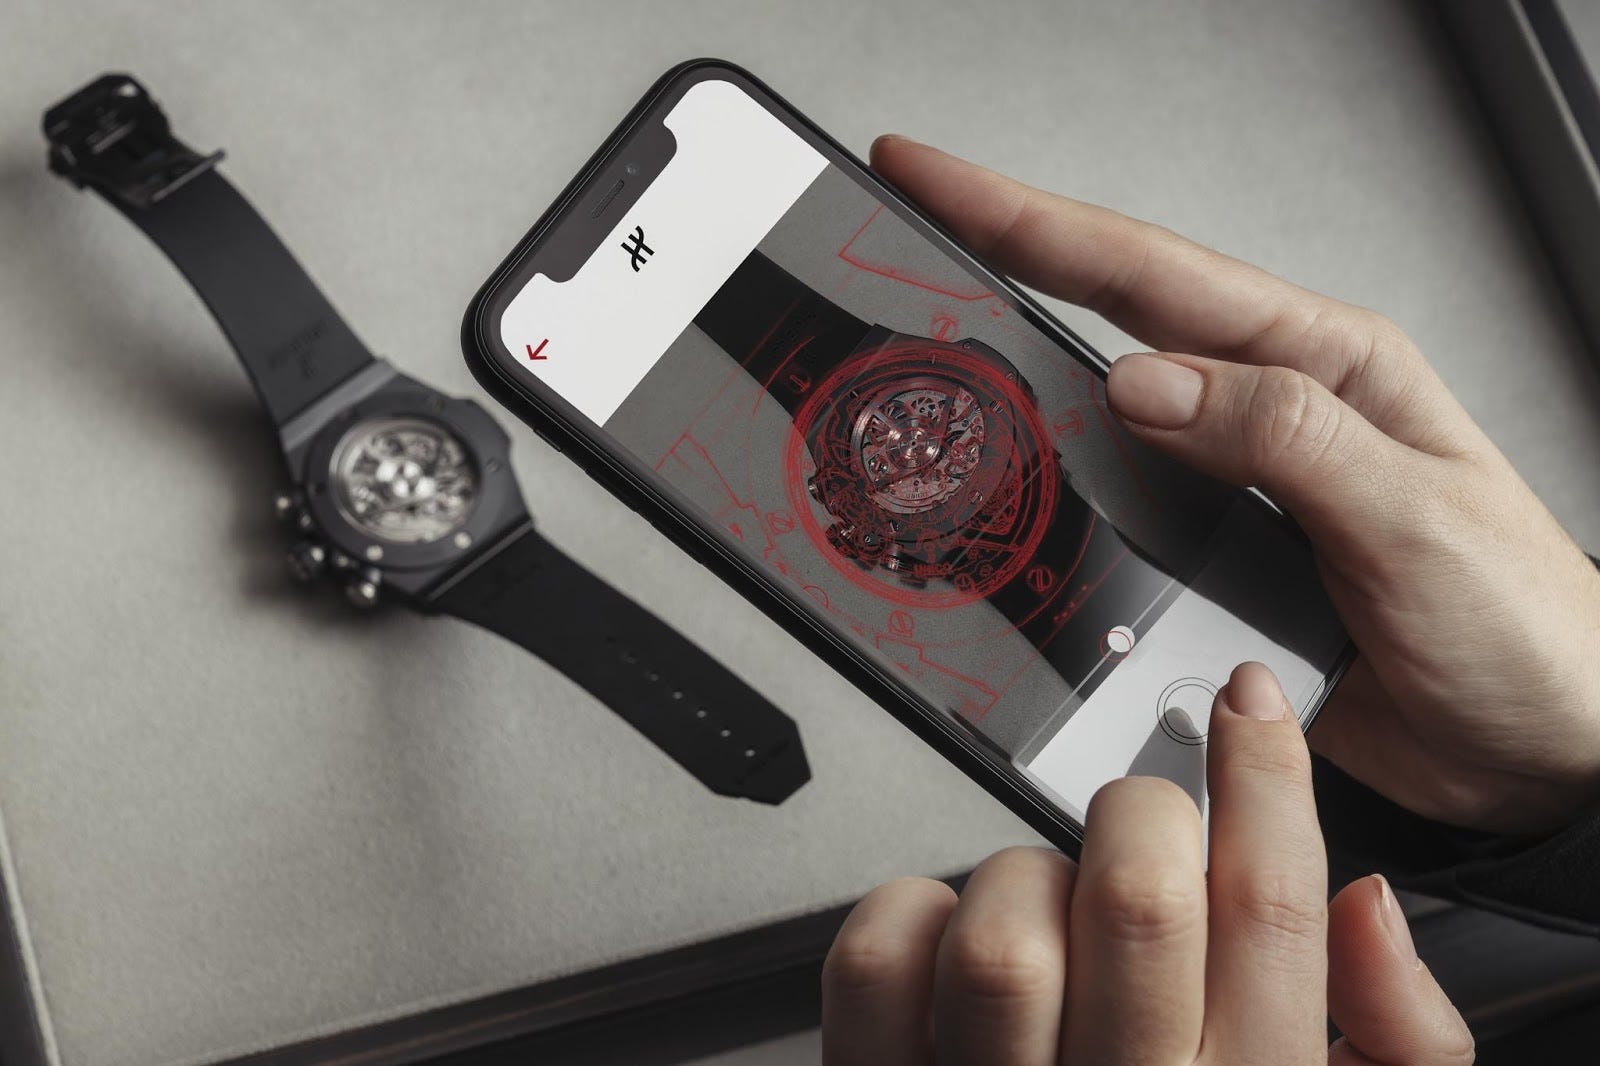 Aura’s app scanning a Hublot watch